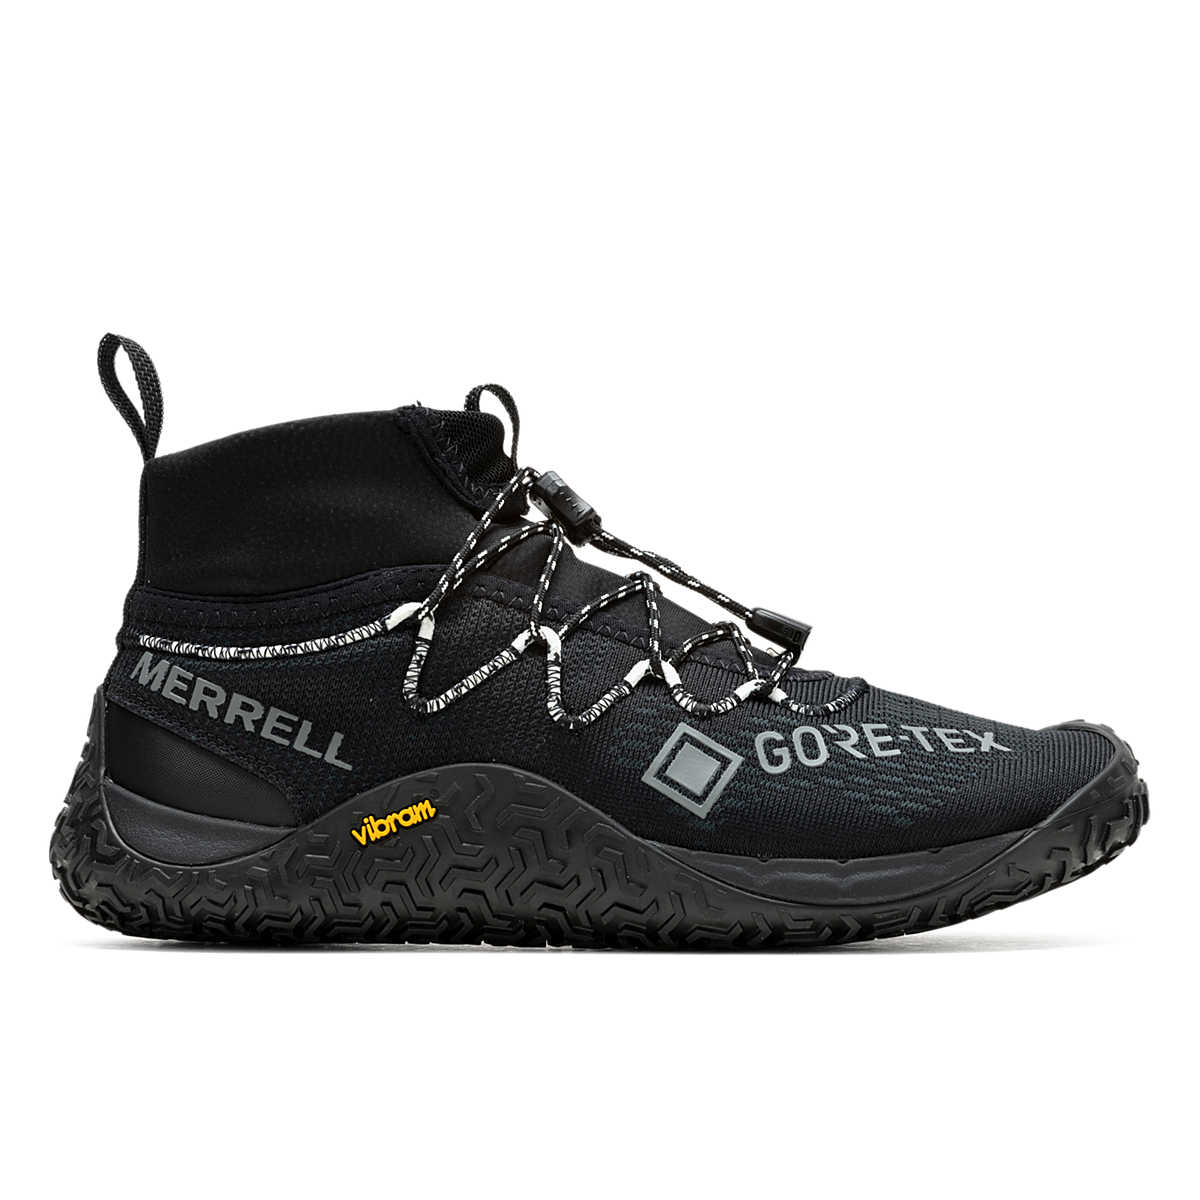 Trail Glove 7 GORE-TEX®, Black, dynamic 1